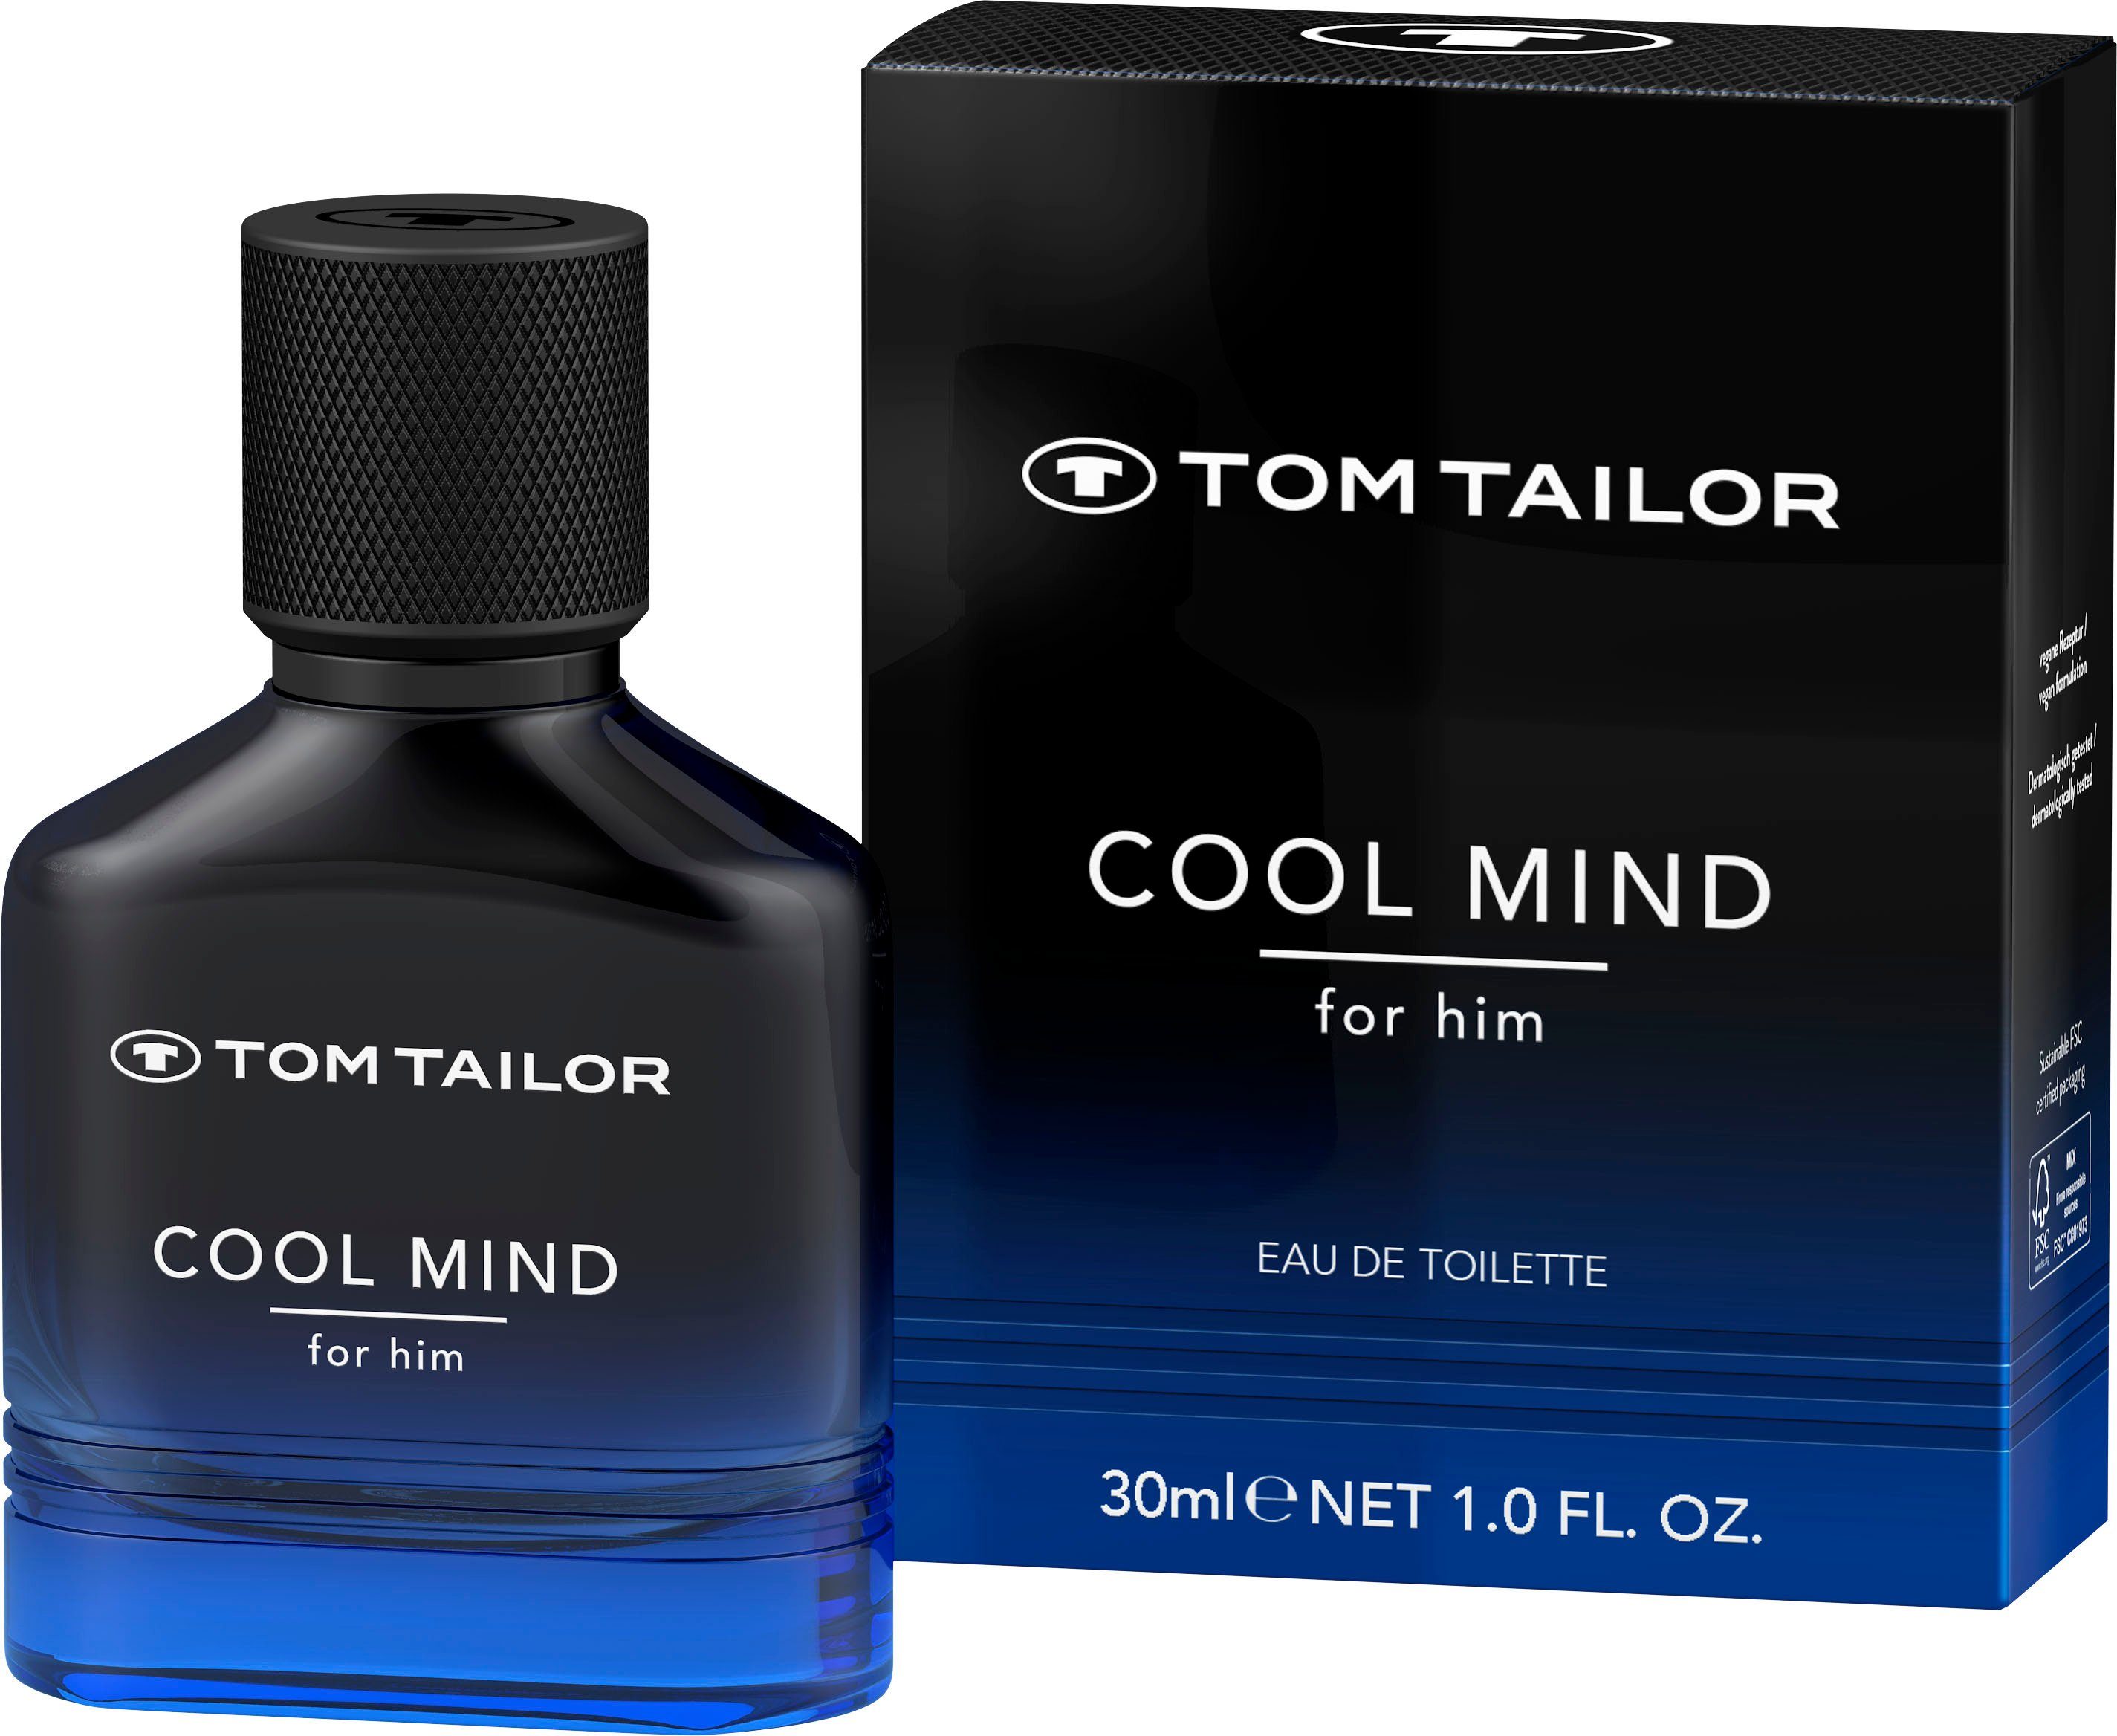 TOM TAILOR Eau de Toilette COOL MIND, Männerduft, EdT, Parfum for him